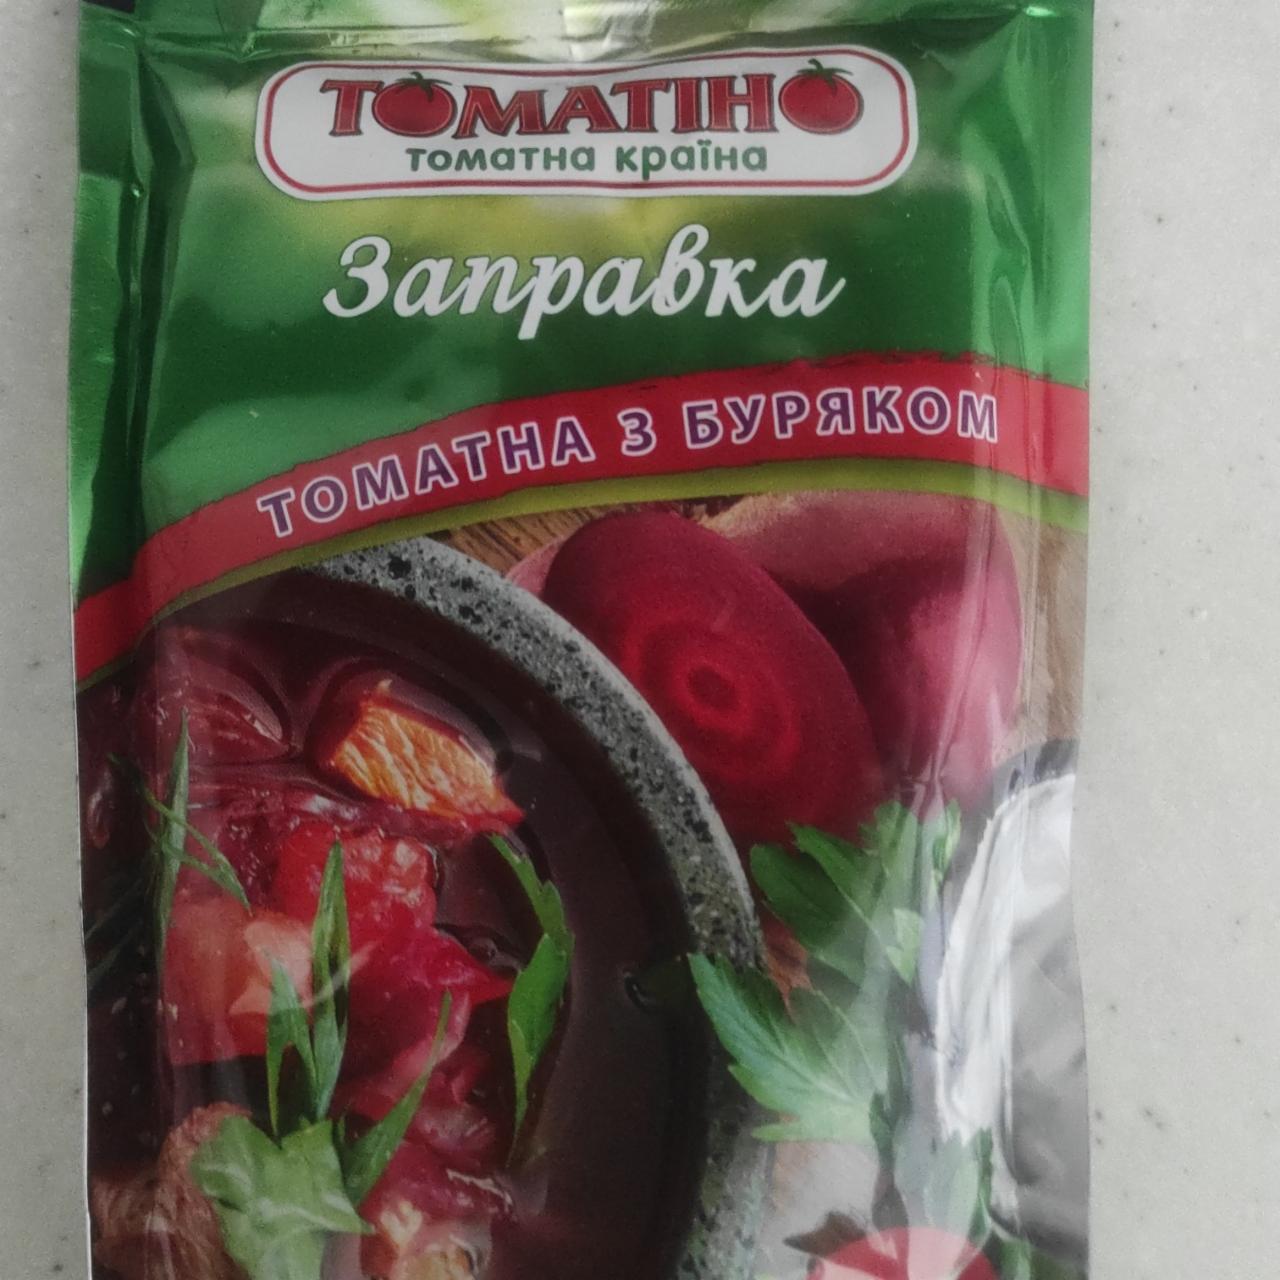 Фото - Заправка томатна з буряком Томатіно